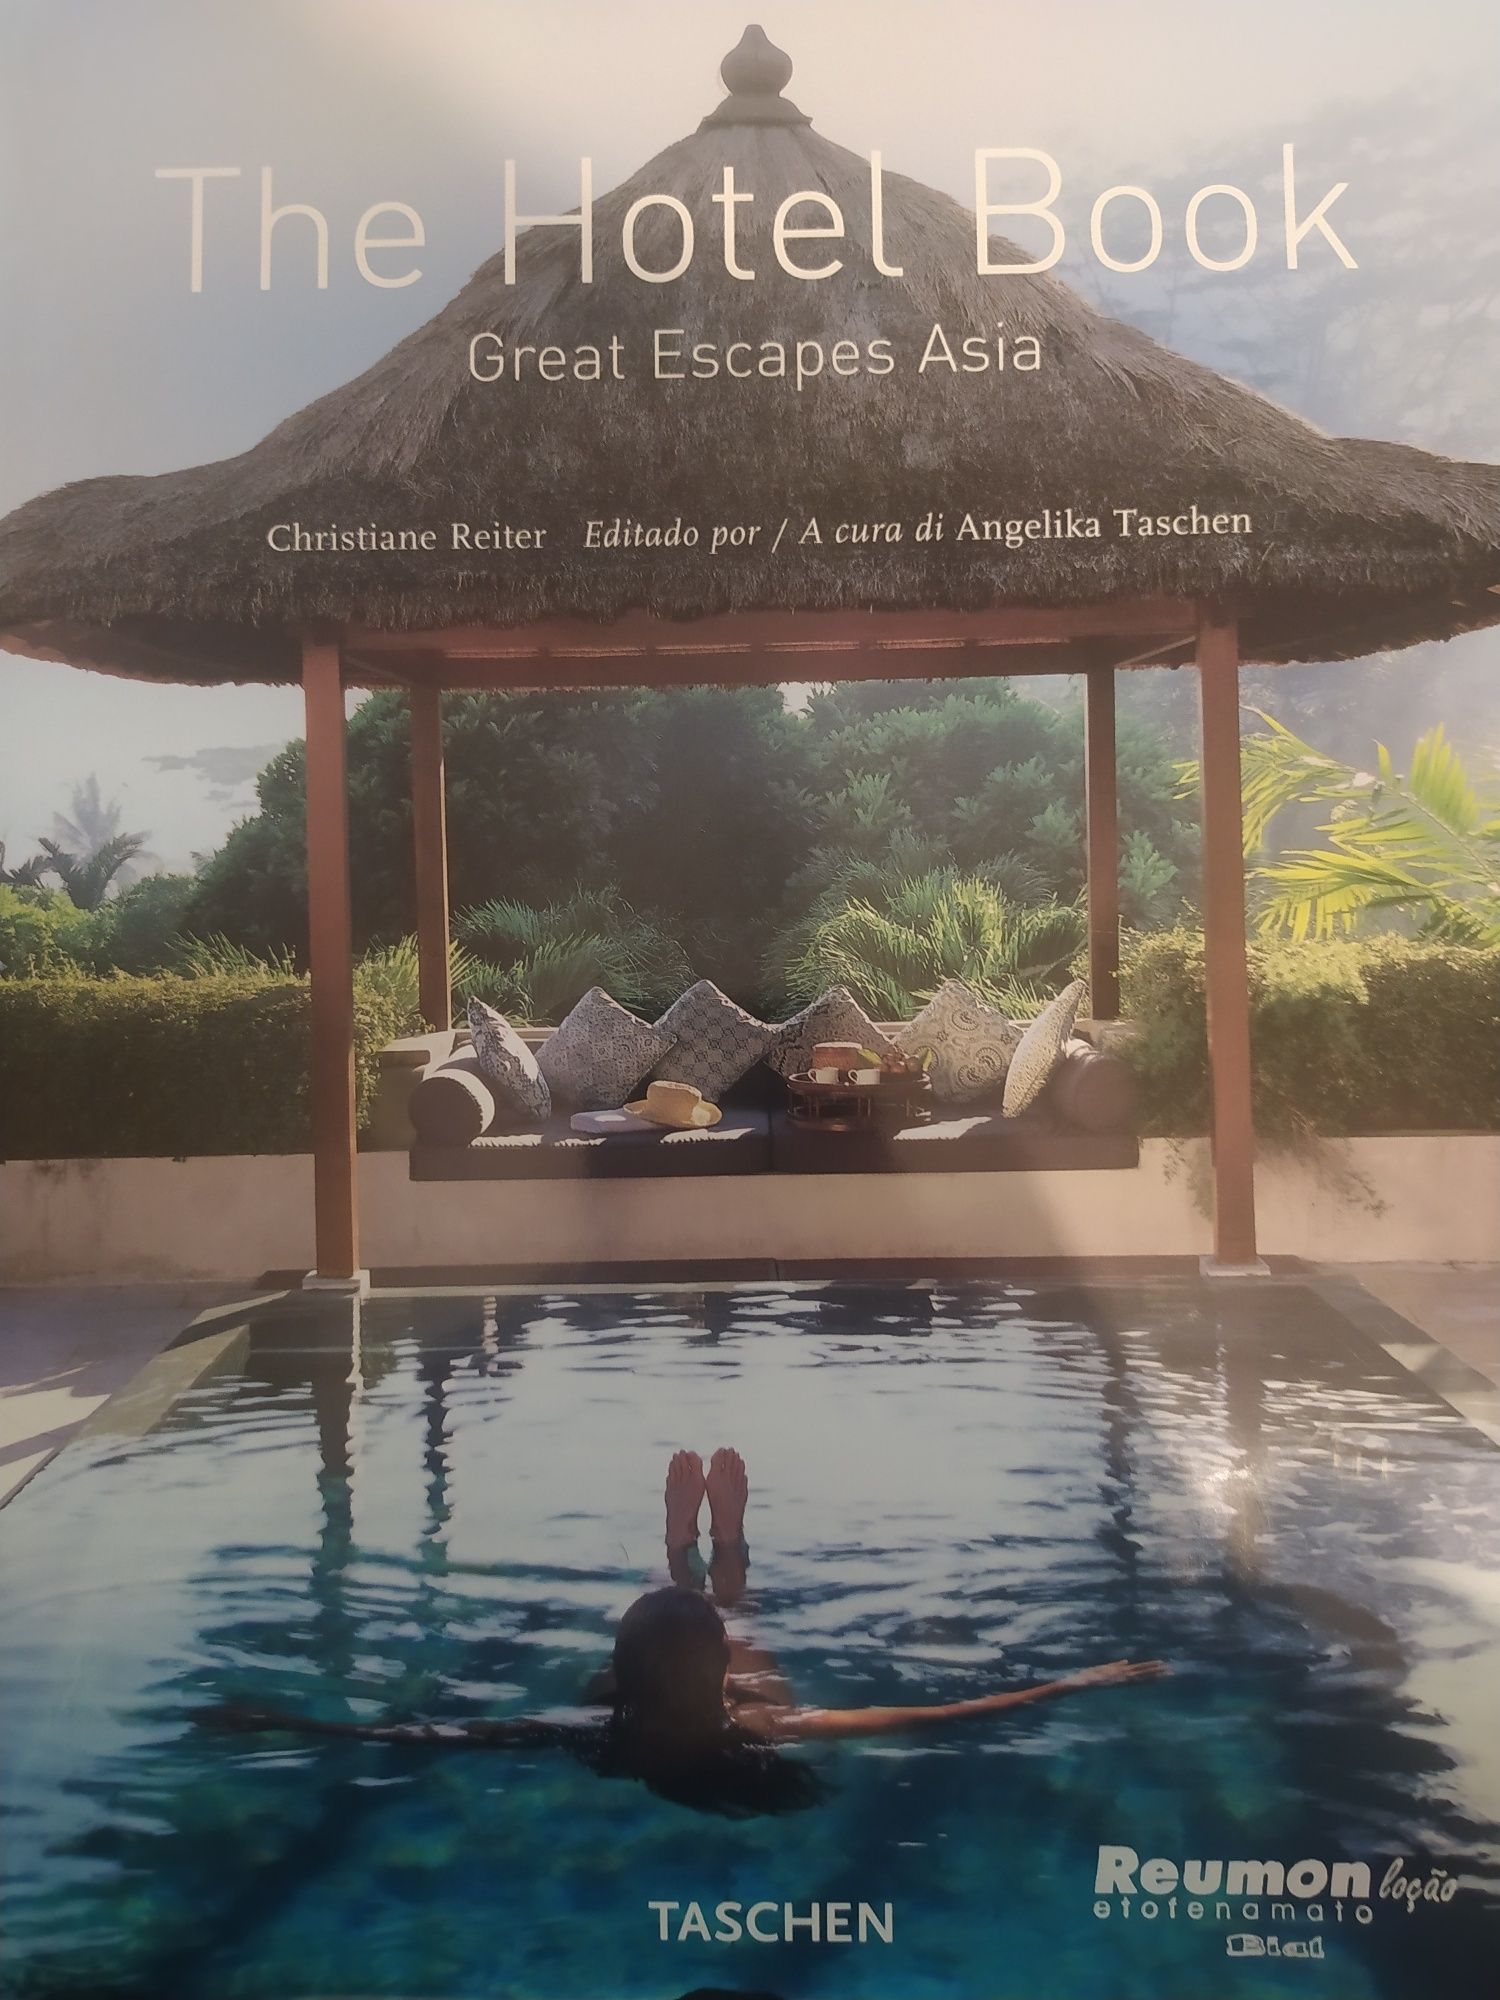 The hotel book, Ásia, Taschen